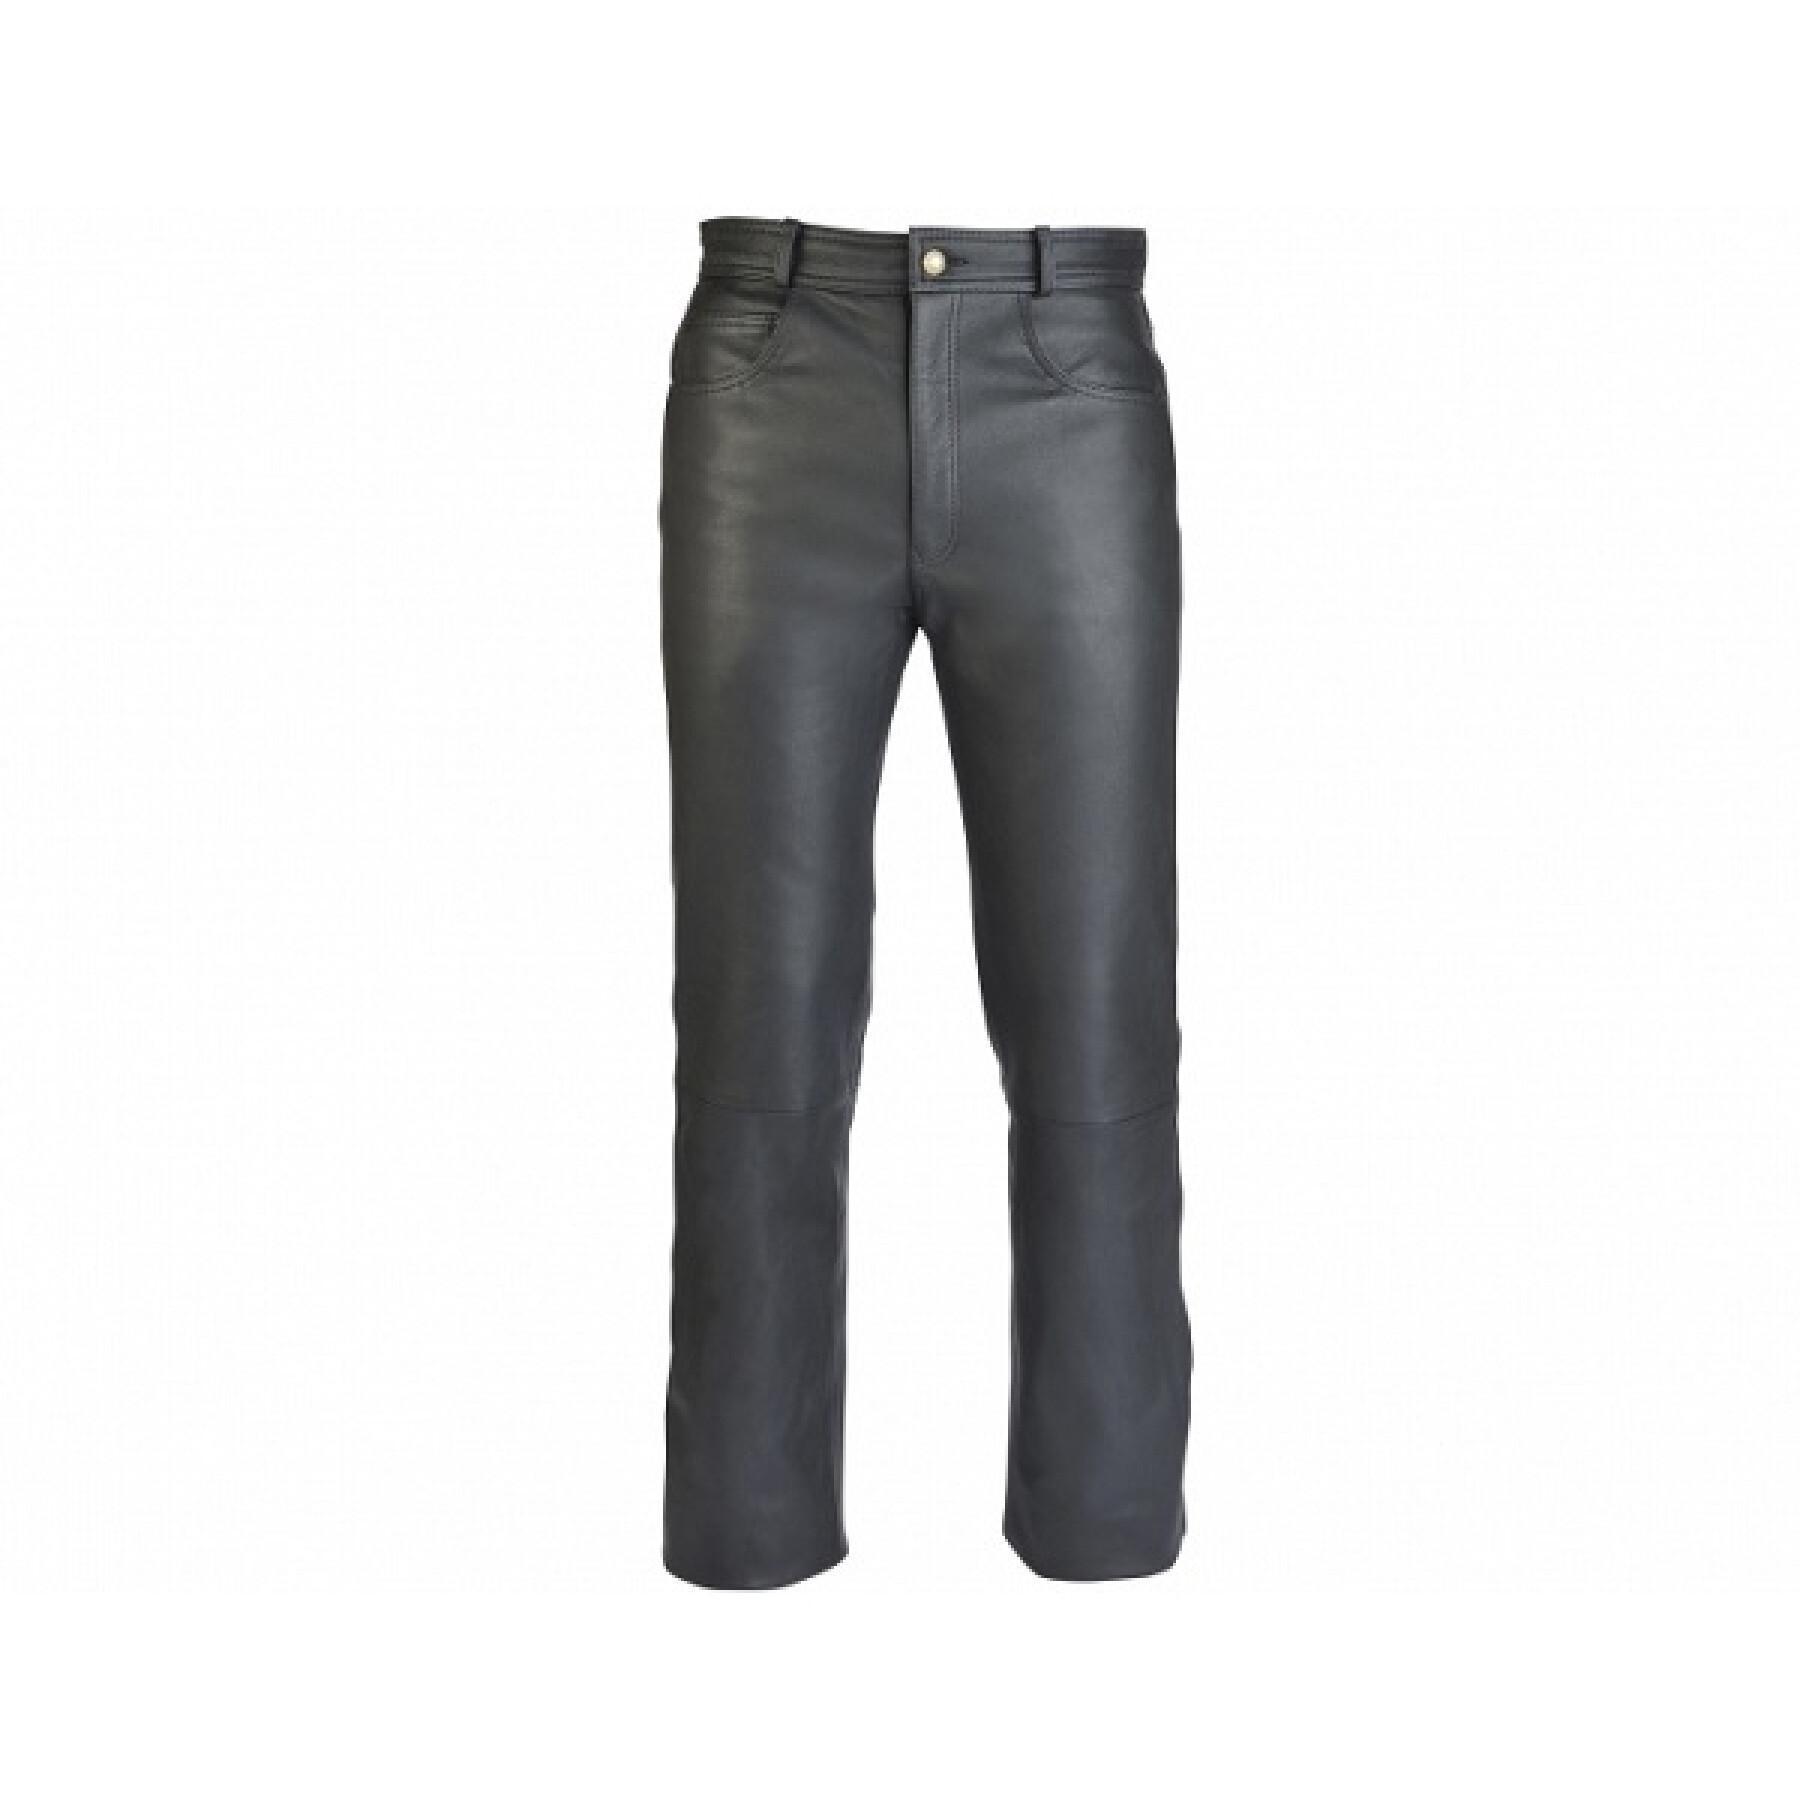 Waterproof leather jeans Soubirac